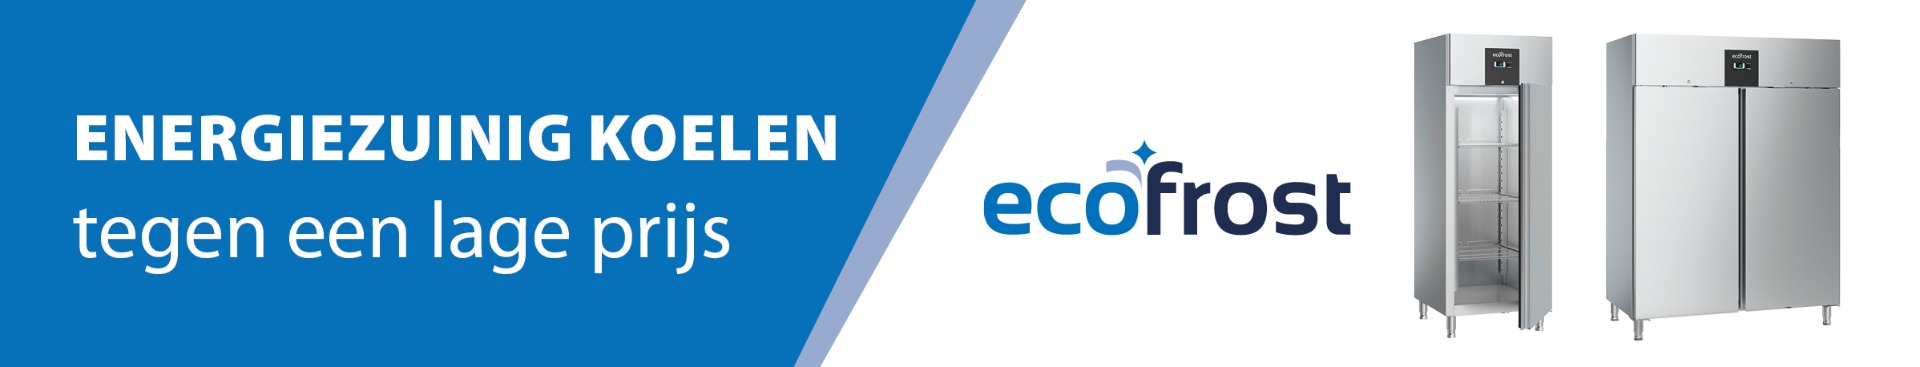 Ecofrost header